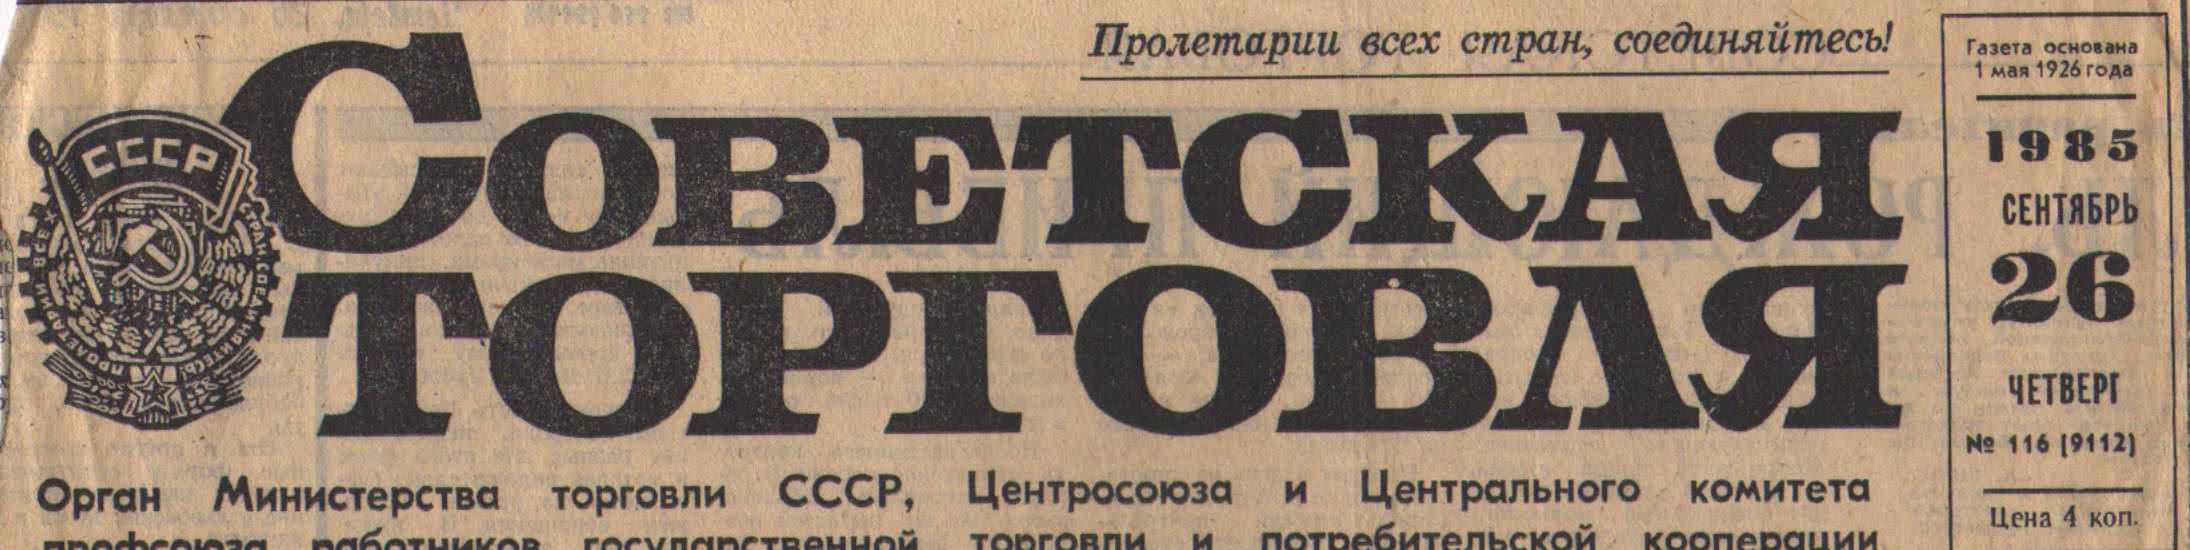 Газета Советская торговля